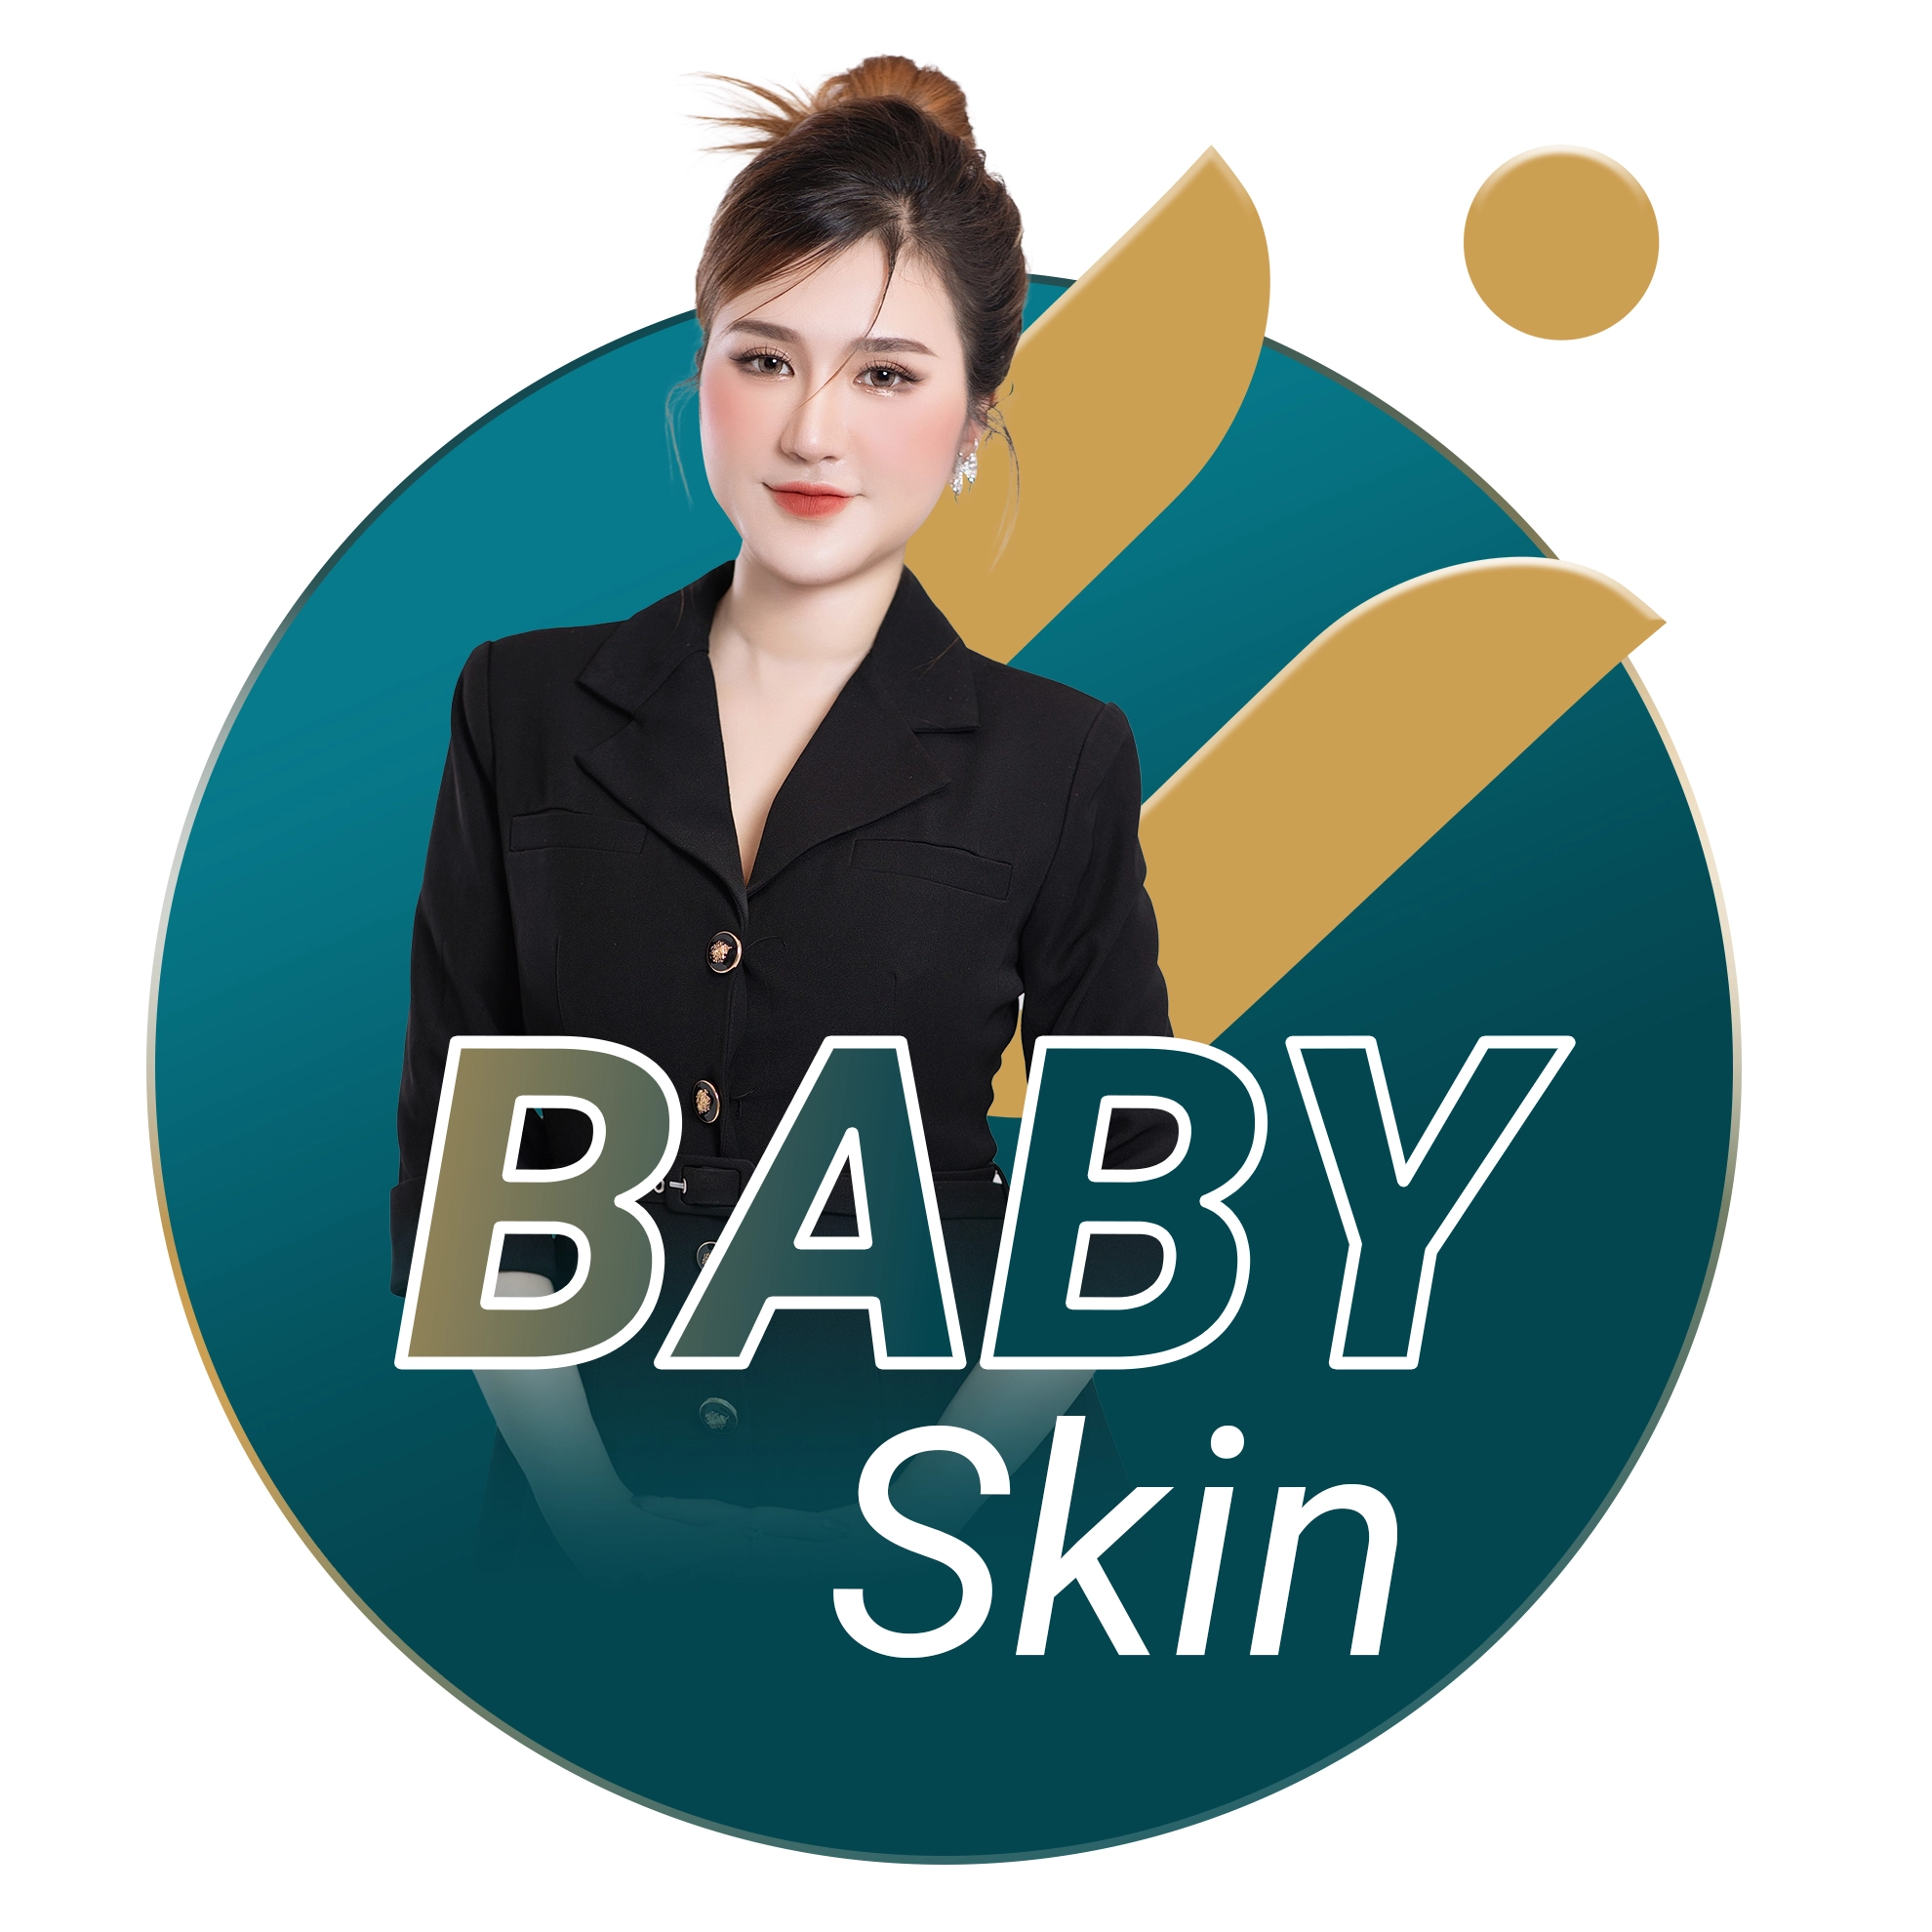 Baby skin